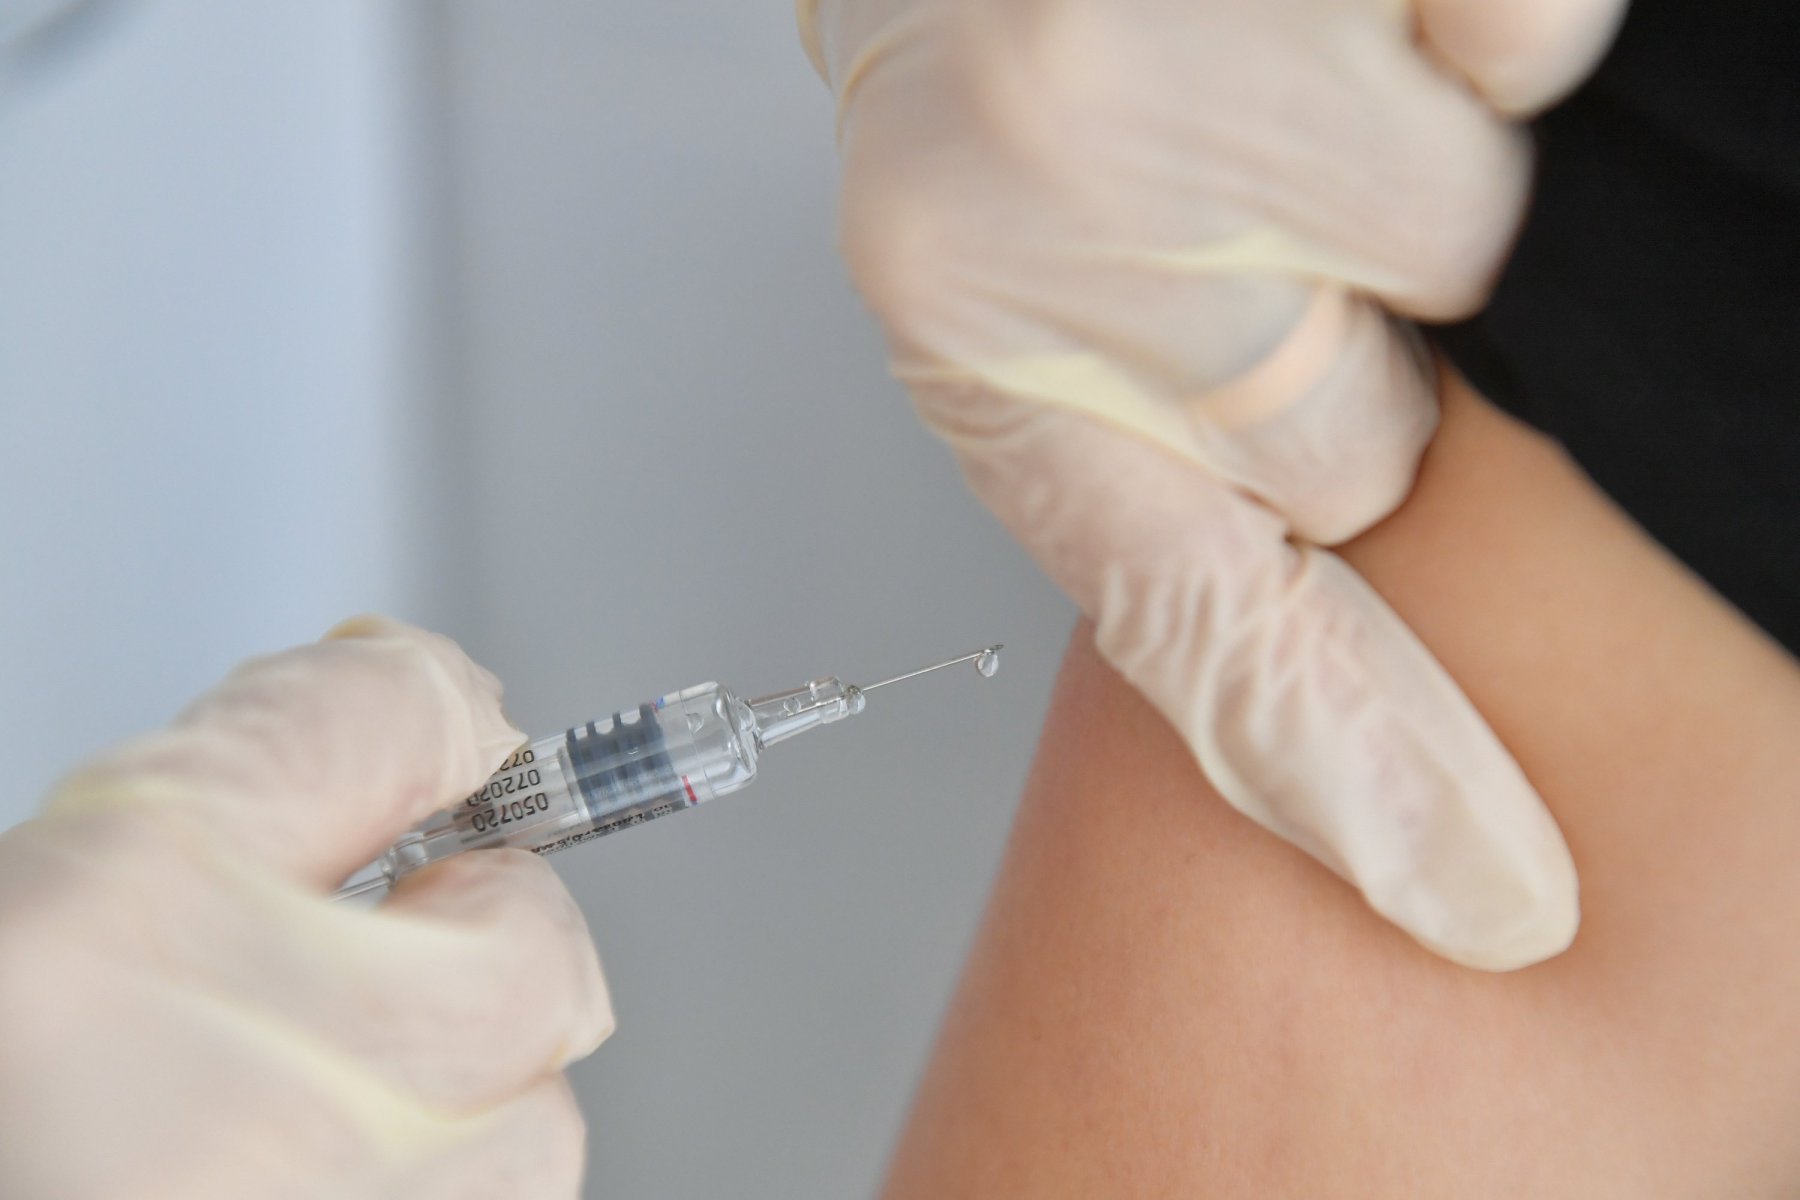 В декабре объявят результаты испытаний вакцины от COVID-19 для людей старше 60 лет